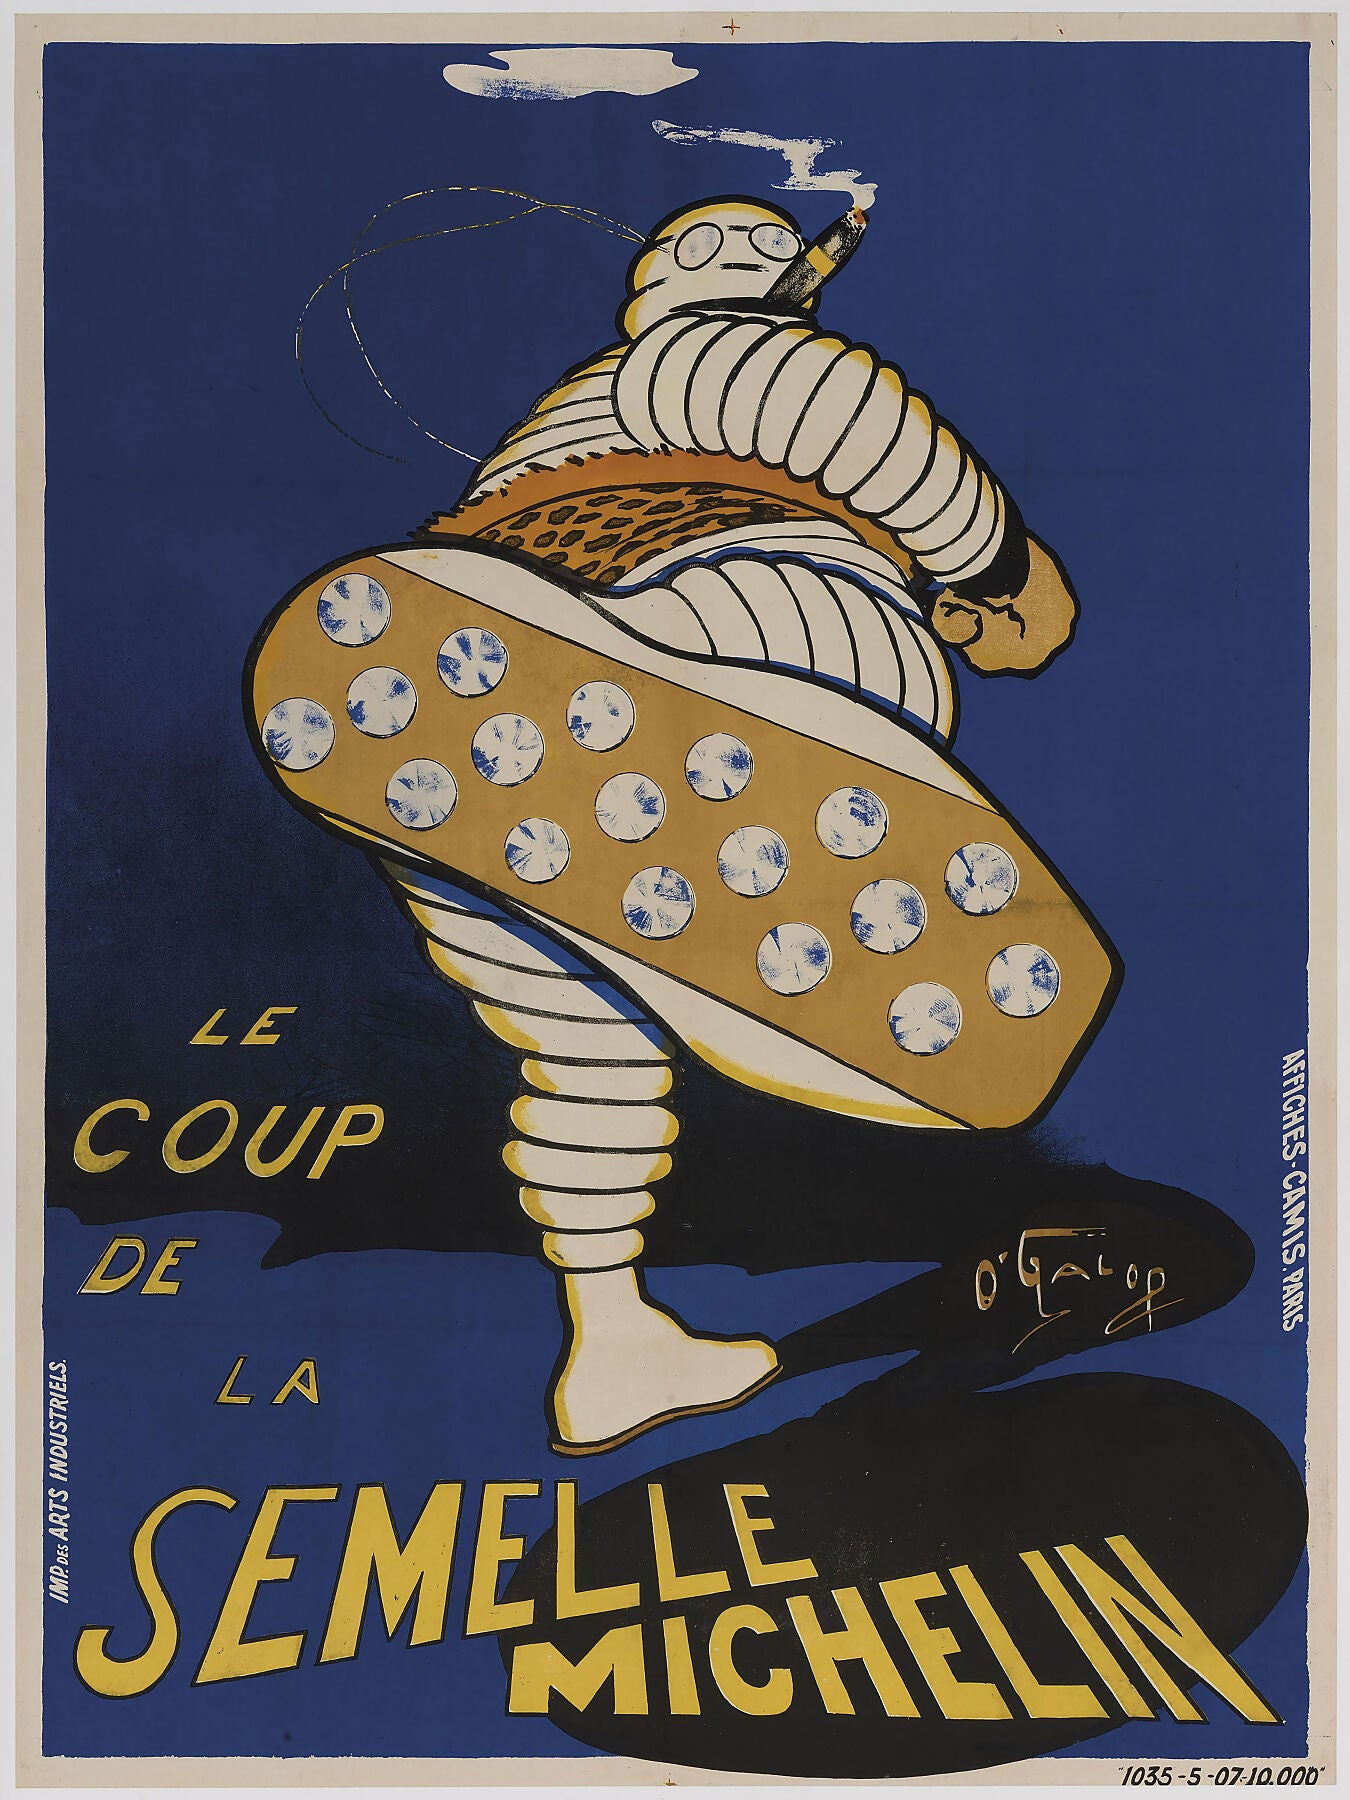 Le Coup De La Semelle Michelin by O'Galop (Marius Rossilllon) - 1905